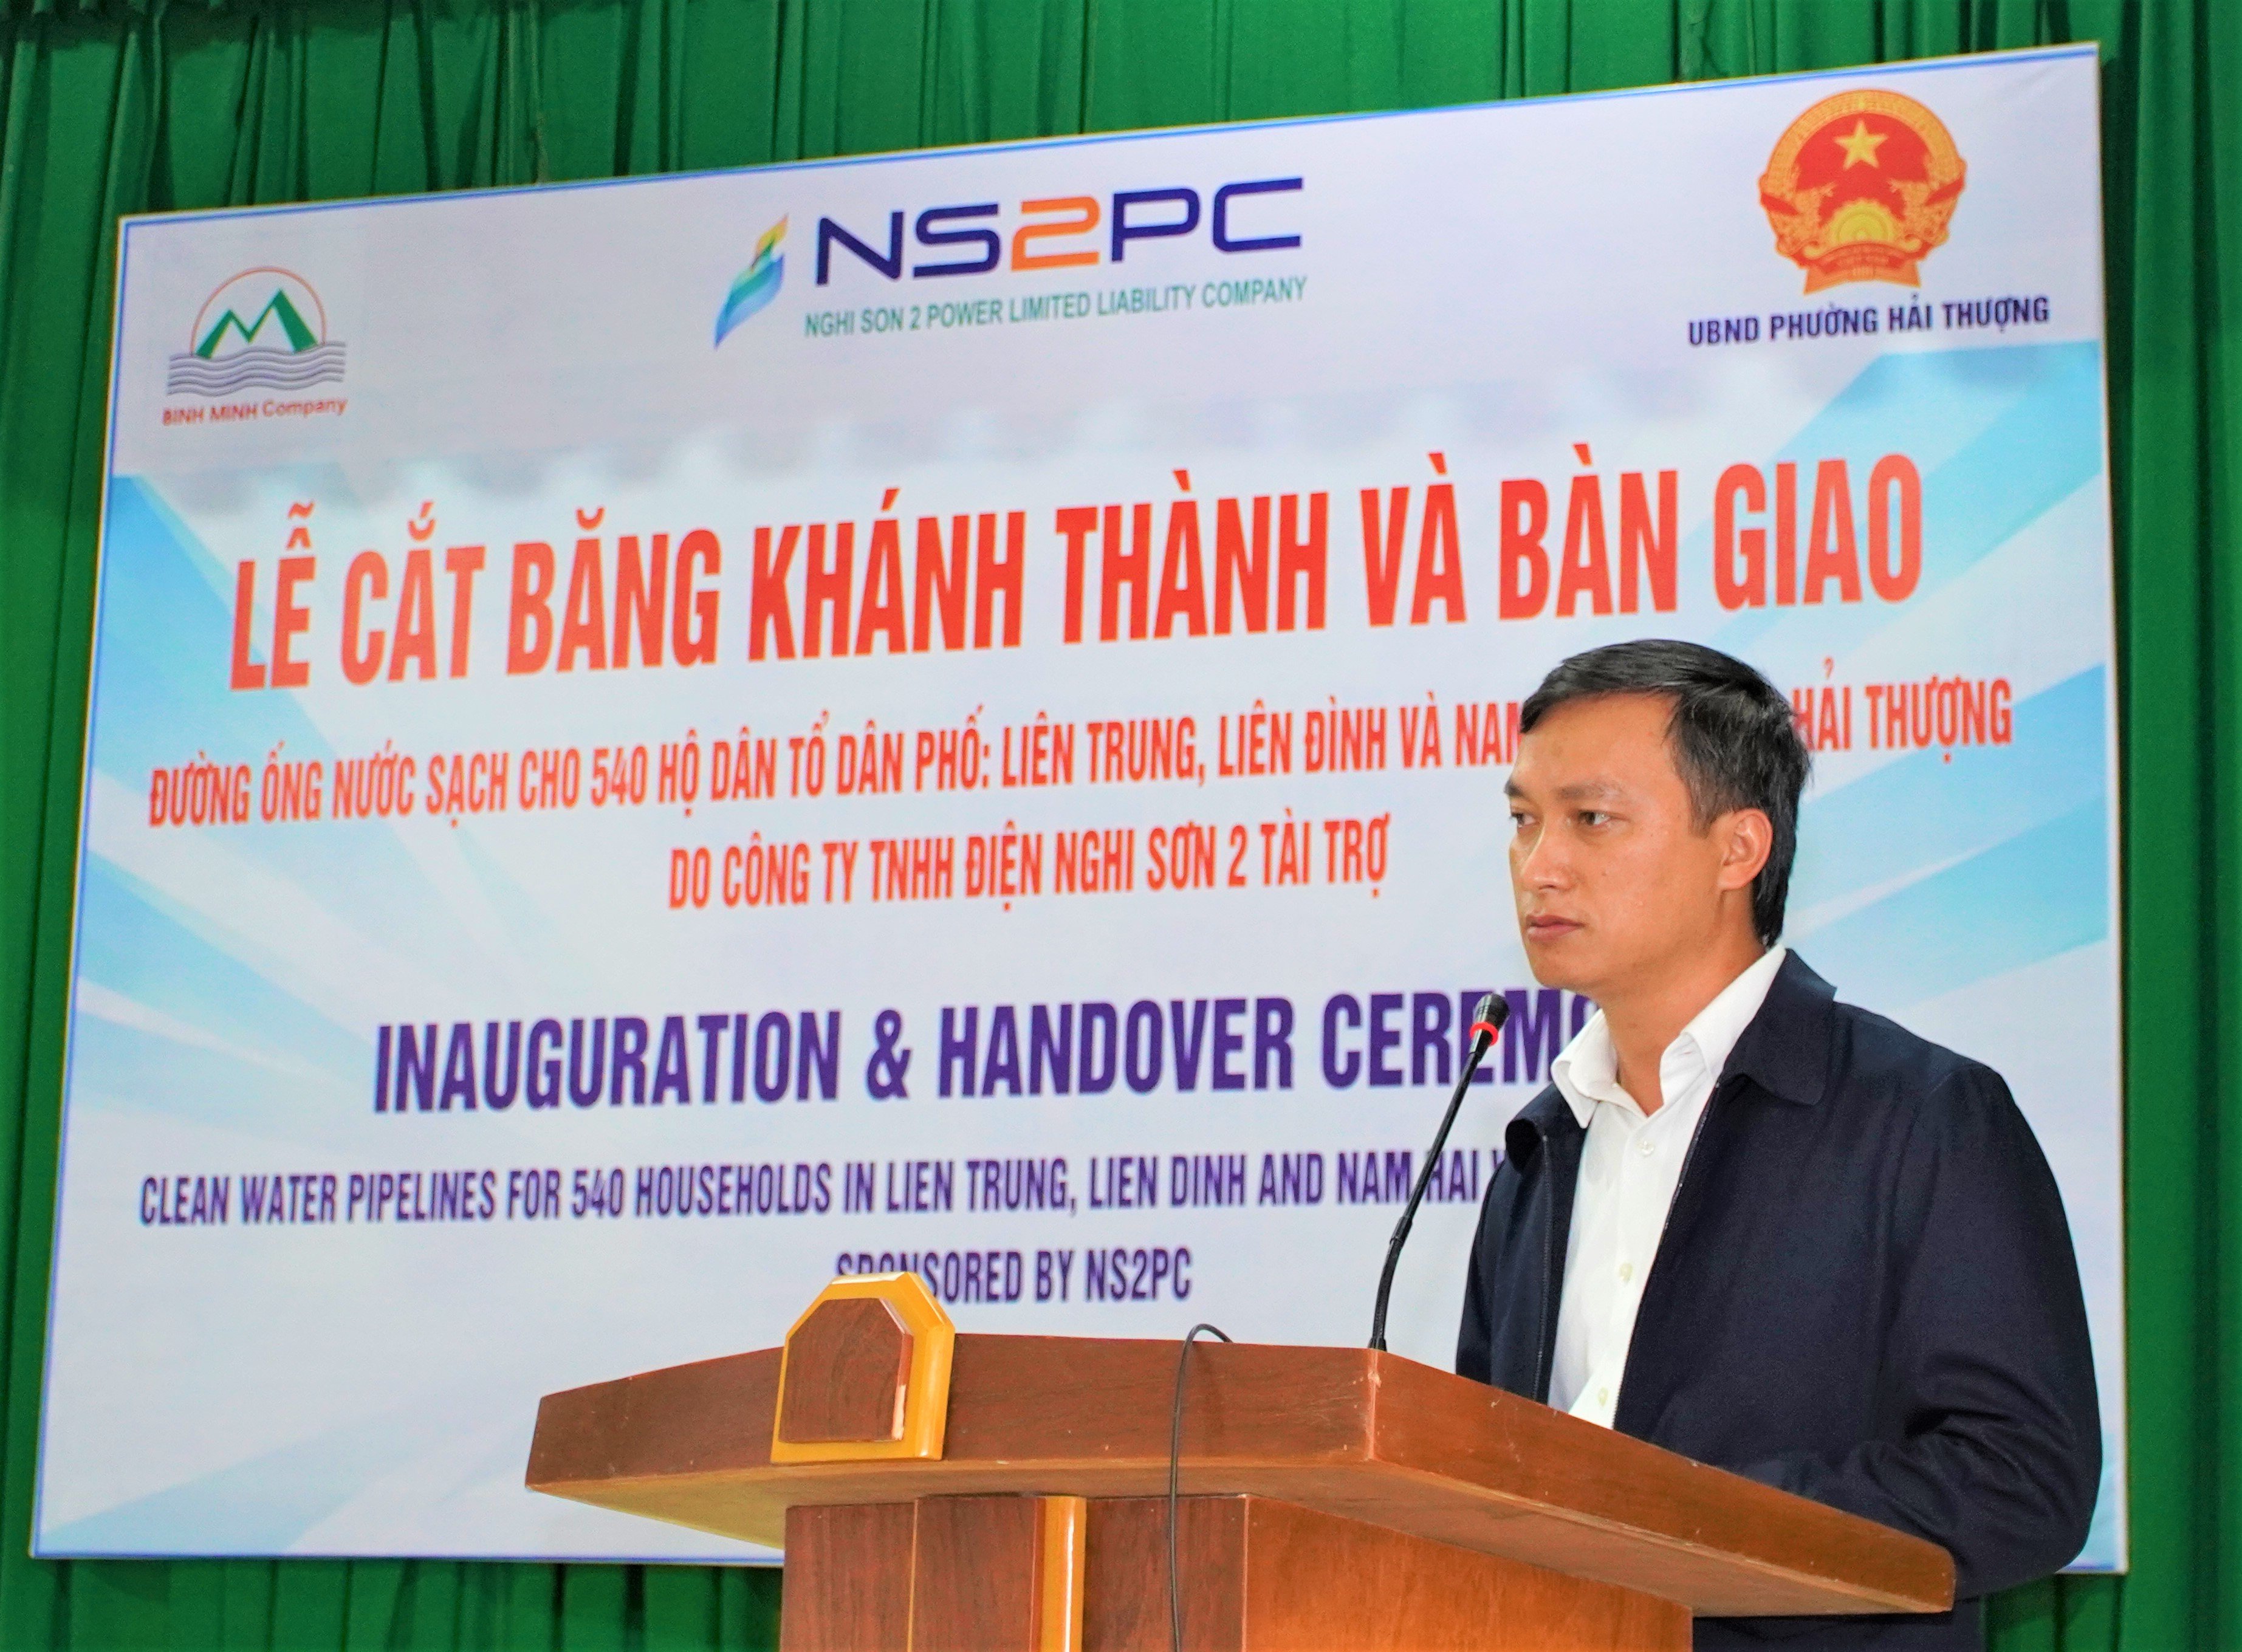 		Mr. Nguyen Van Ngo